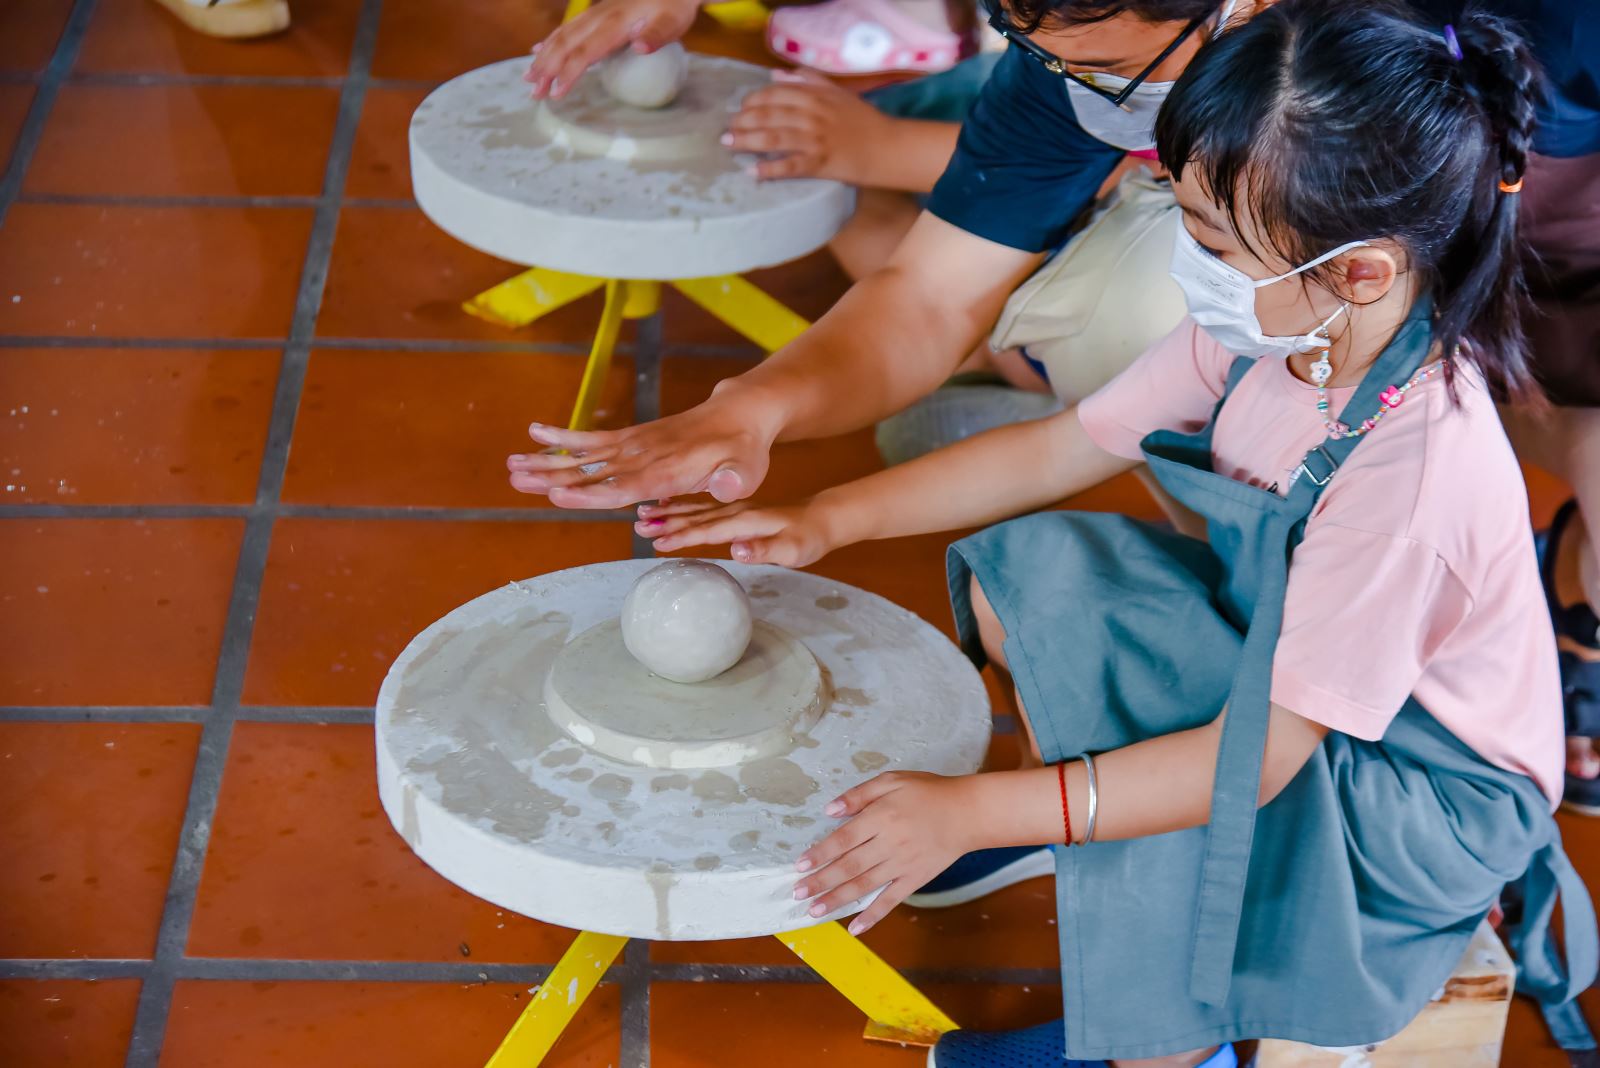 Tại Sài Gòn cũng có nhiều người muốn trải nghiệm làm gốm Bát Tràng tại Hồ Chí Minh để có cơ hội tìm hiểu giá trị của nghệ thuật làm gốm